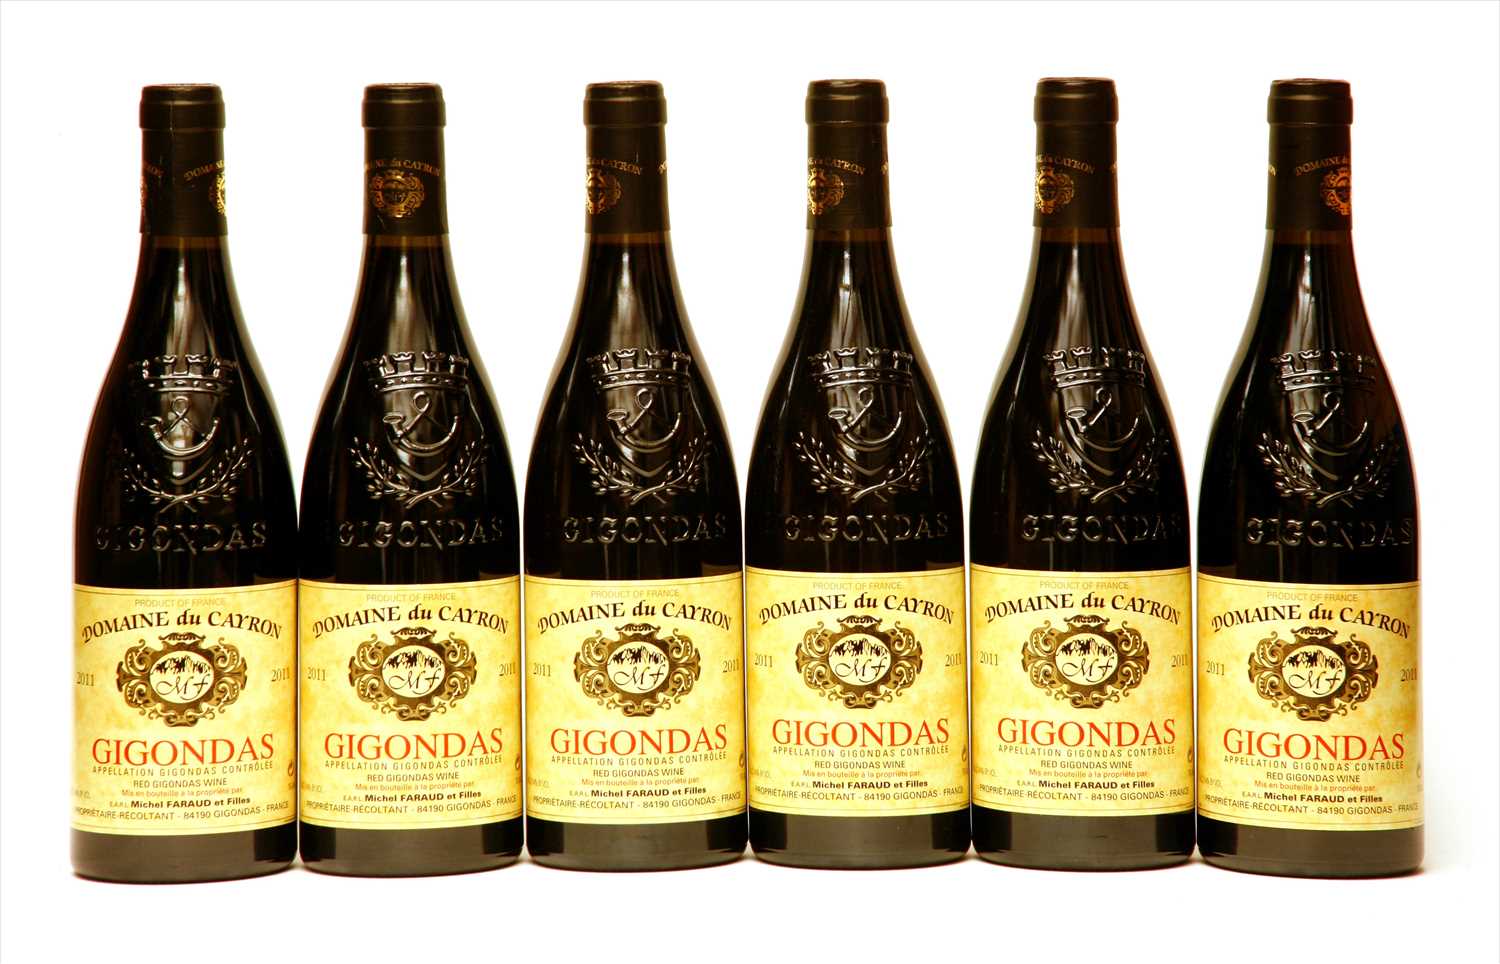 Lot 204 - Domaine du Cayron, Gigondas, 2011, six bottles